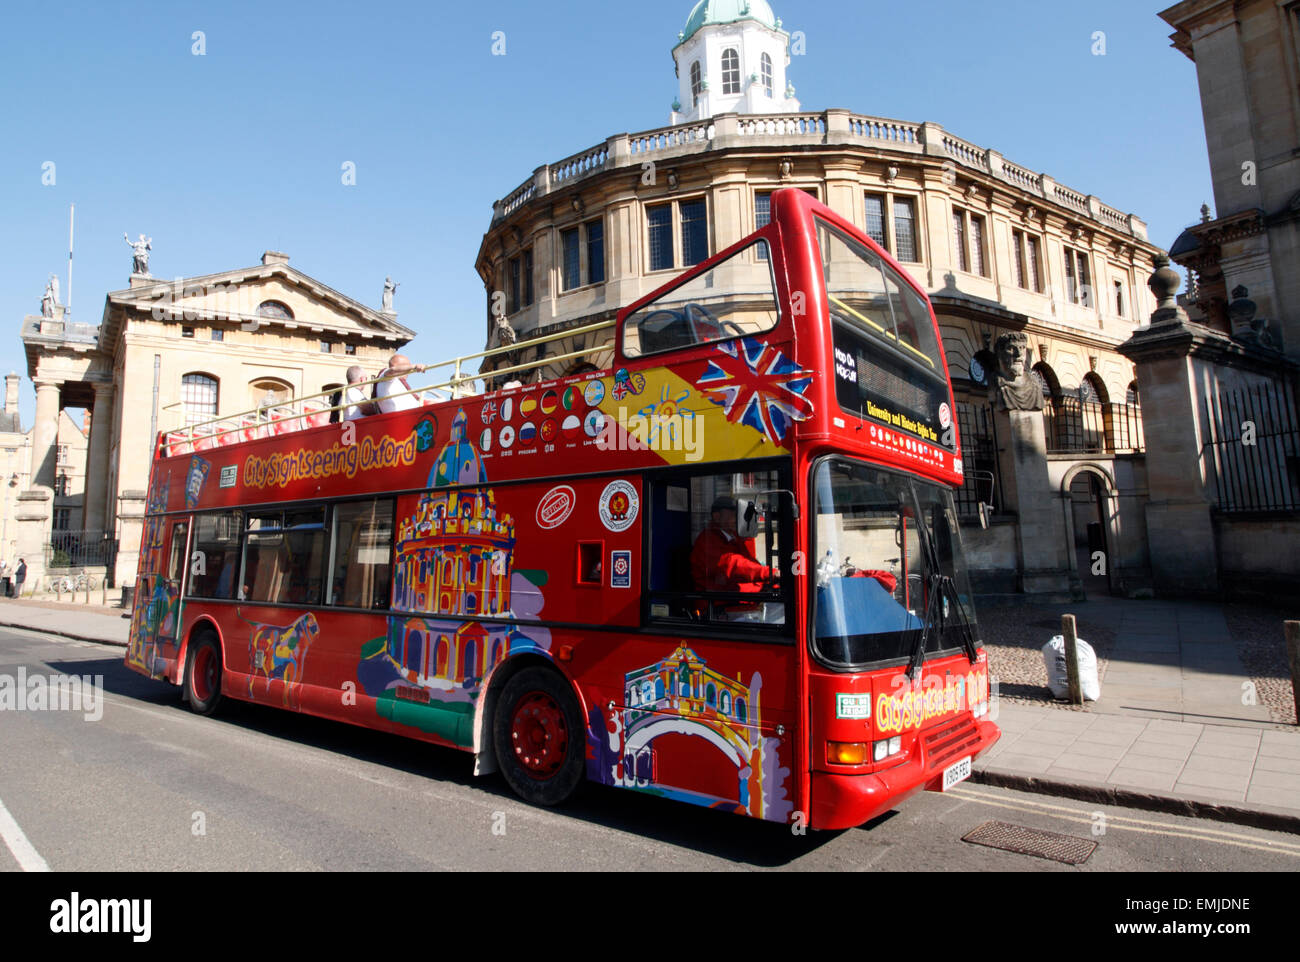 Un bus de tourisme open top rouge à l'extérieur du Sheldonian Theatre d'Oxford, Angleterre Banque D'Images